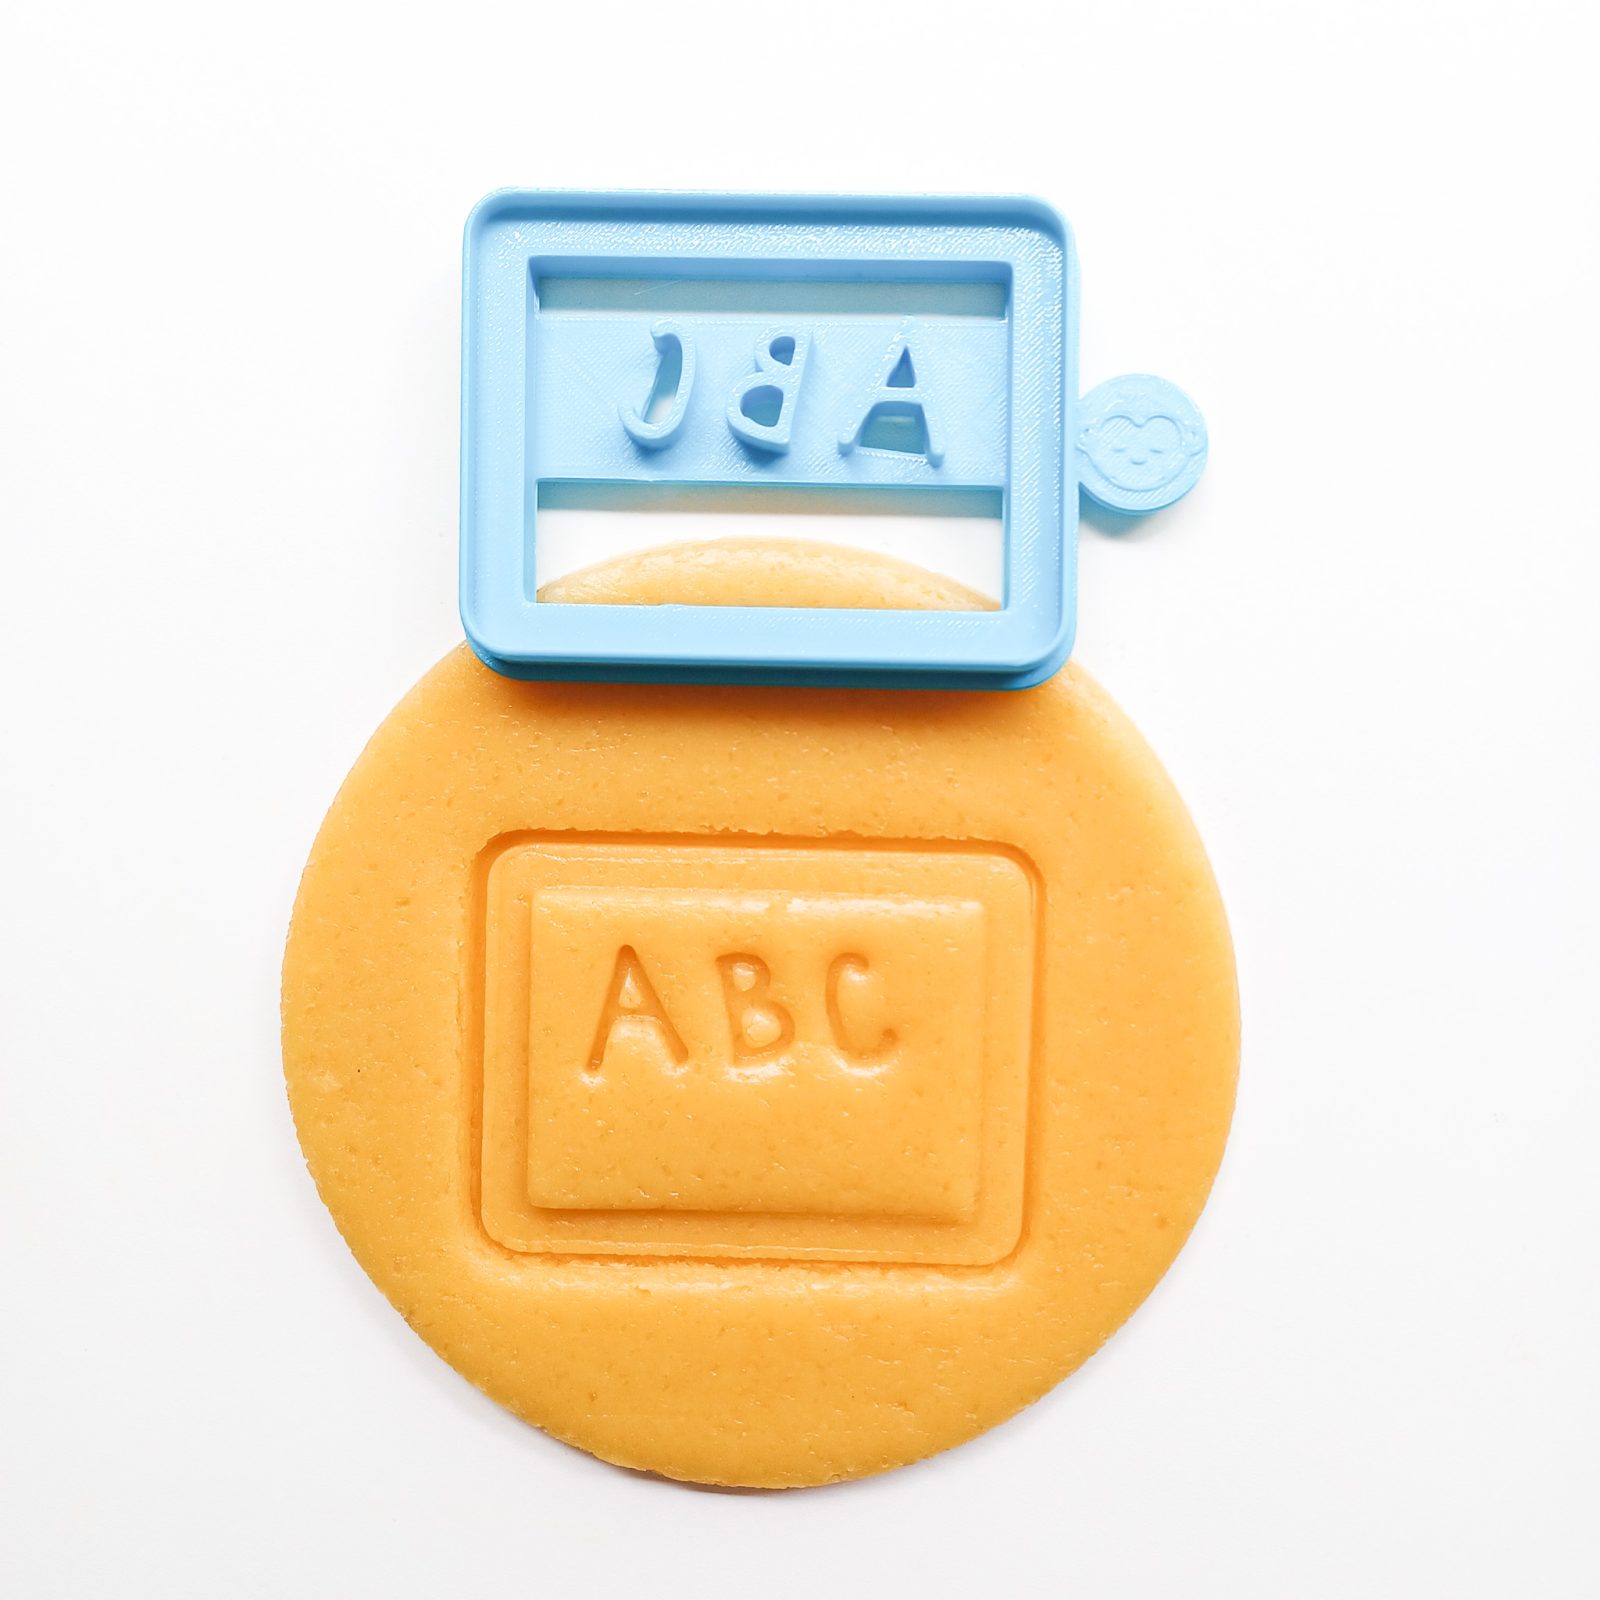 ABC Board Cookie Cutter